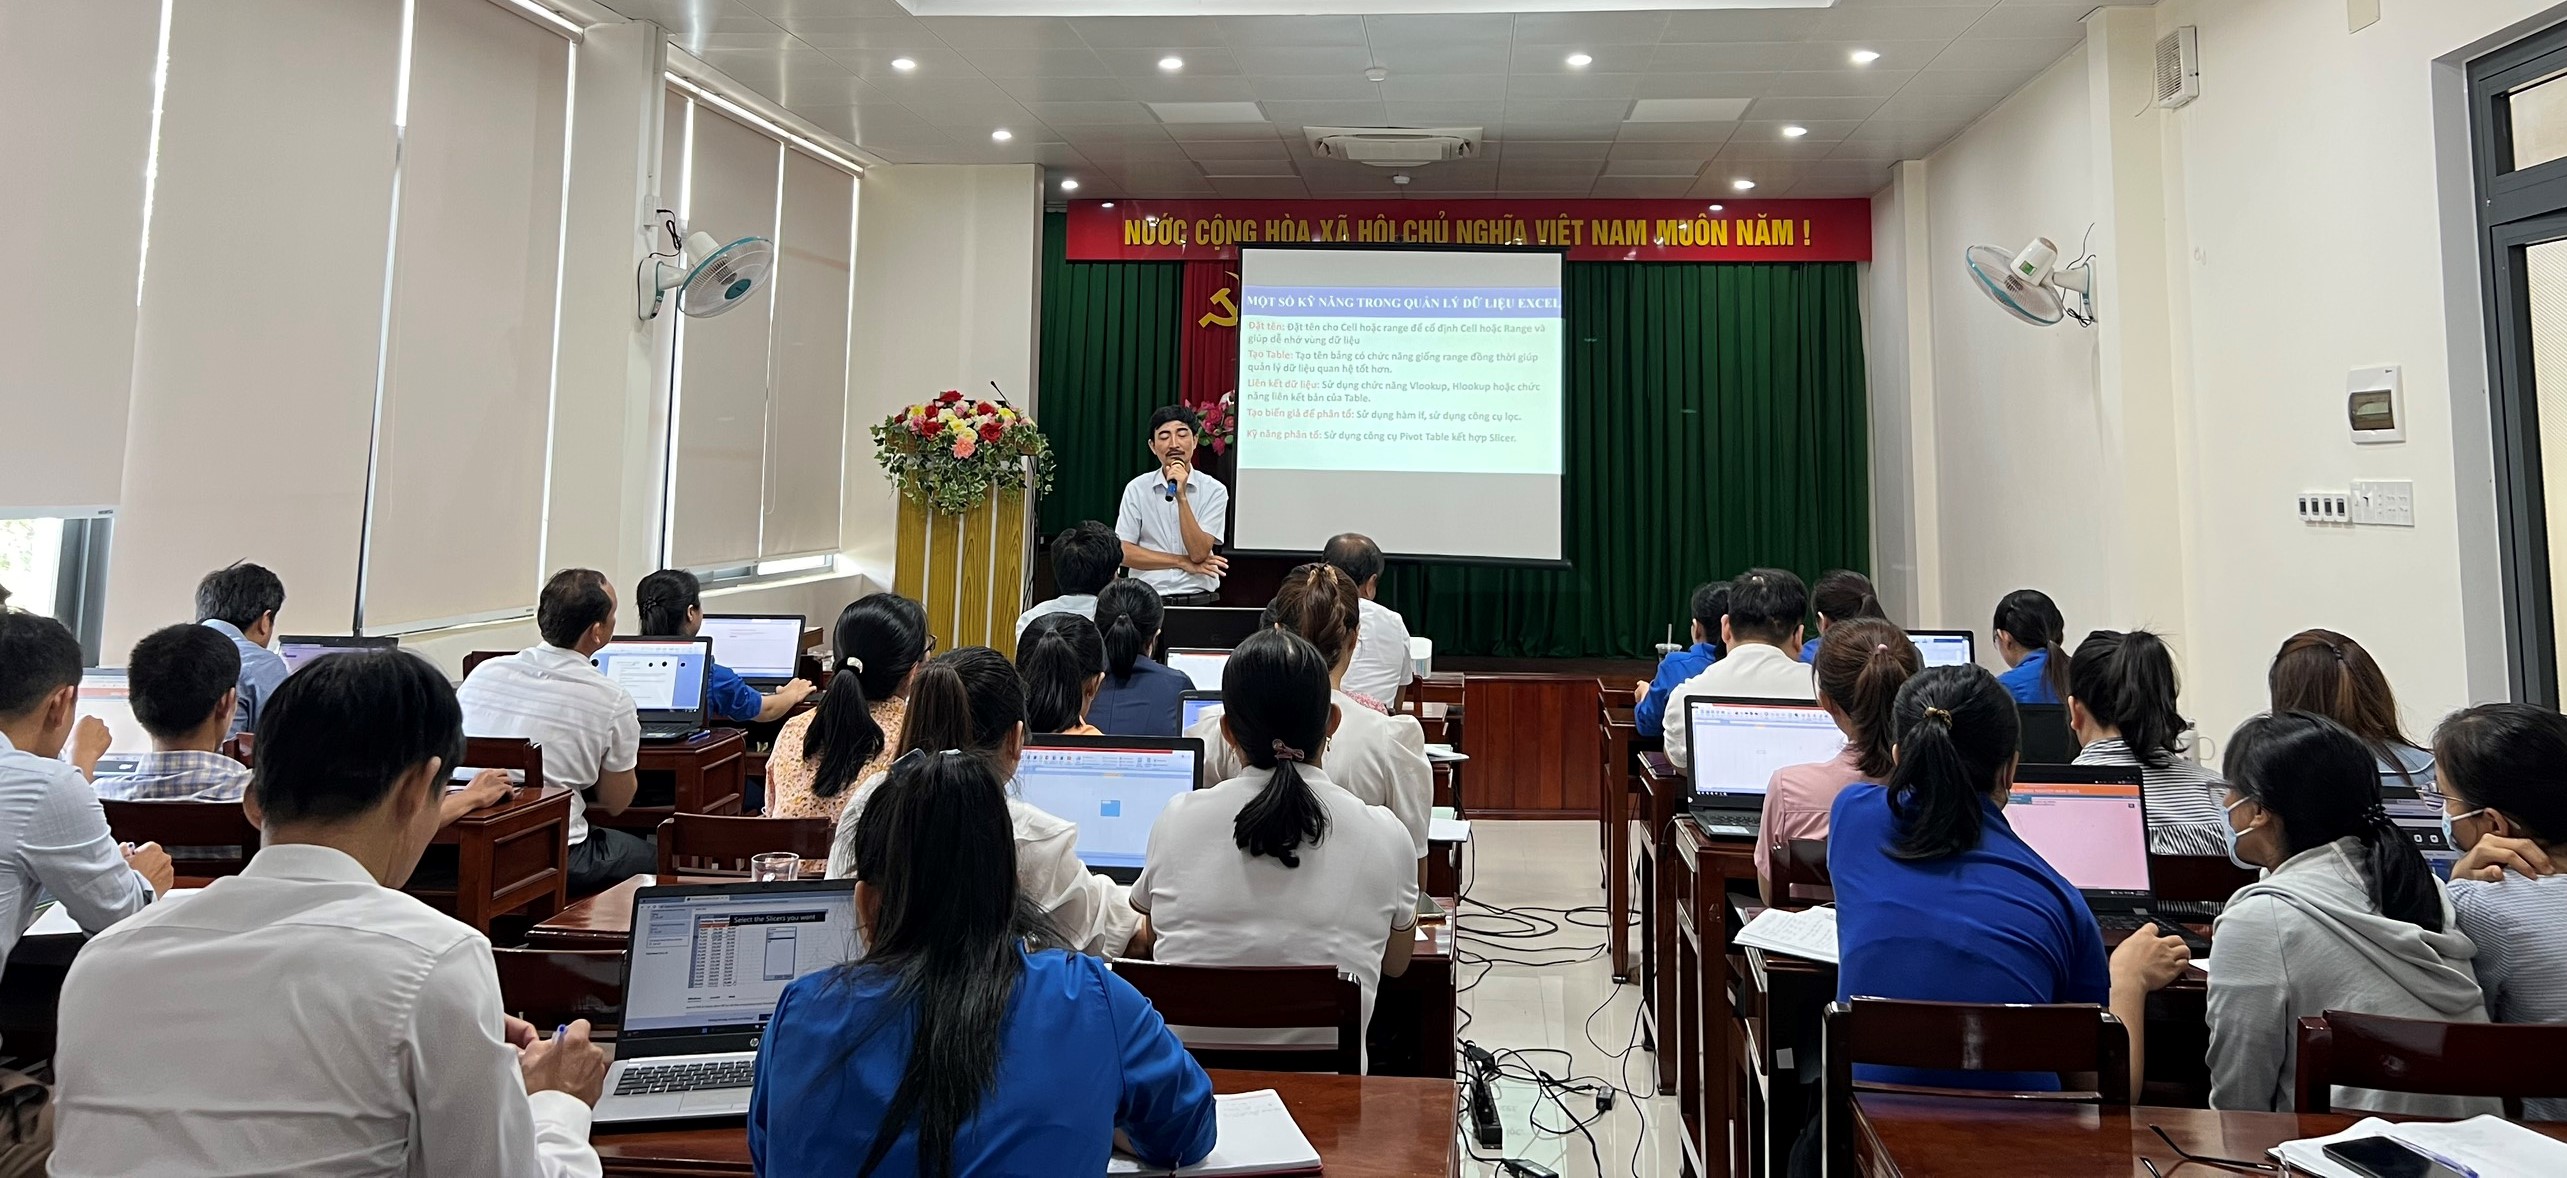 Cục Thống kê Quảng Ngãi tổ chức hội nghị tập huấn nghiệp vụ ứng dụng công nghệ thông tin trong công tác thống kê